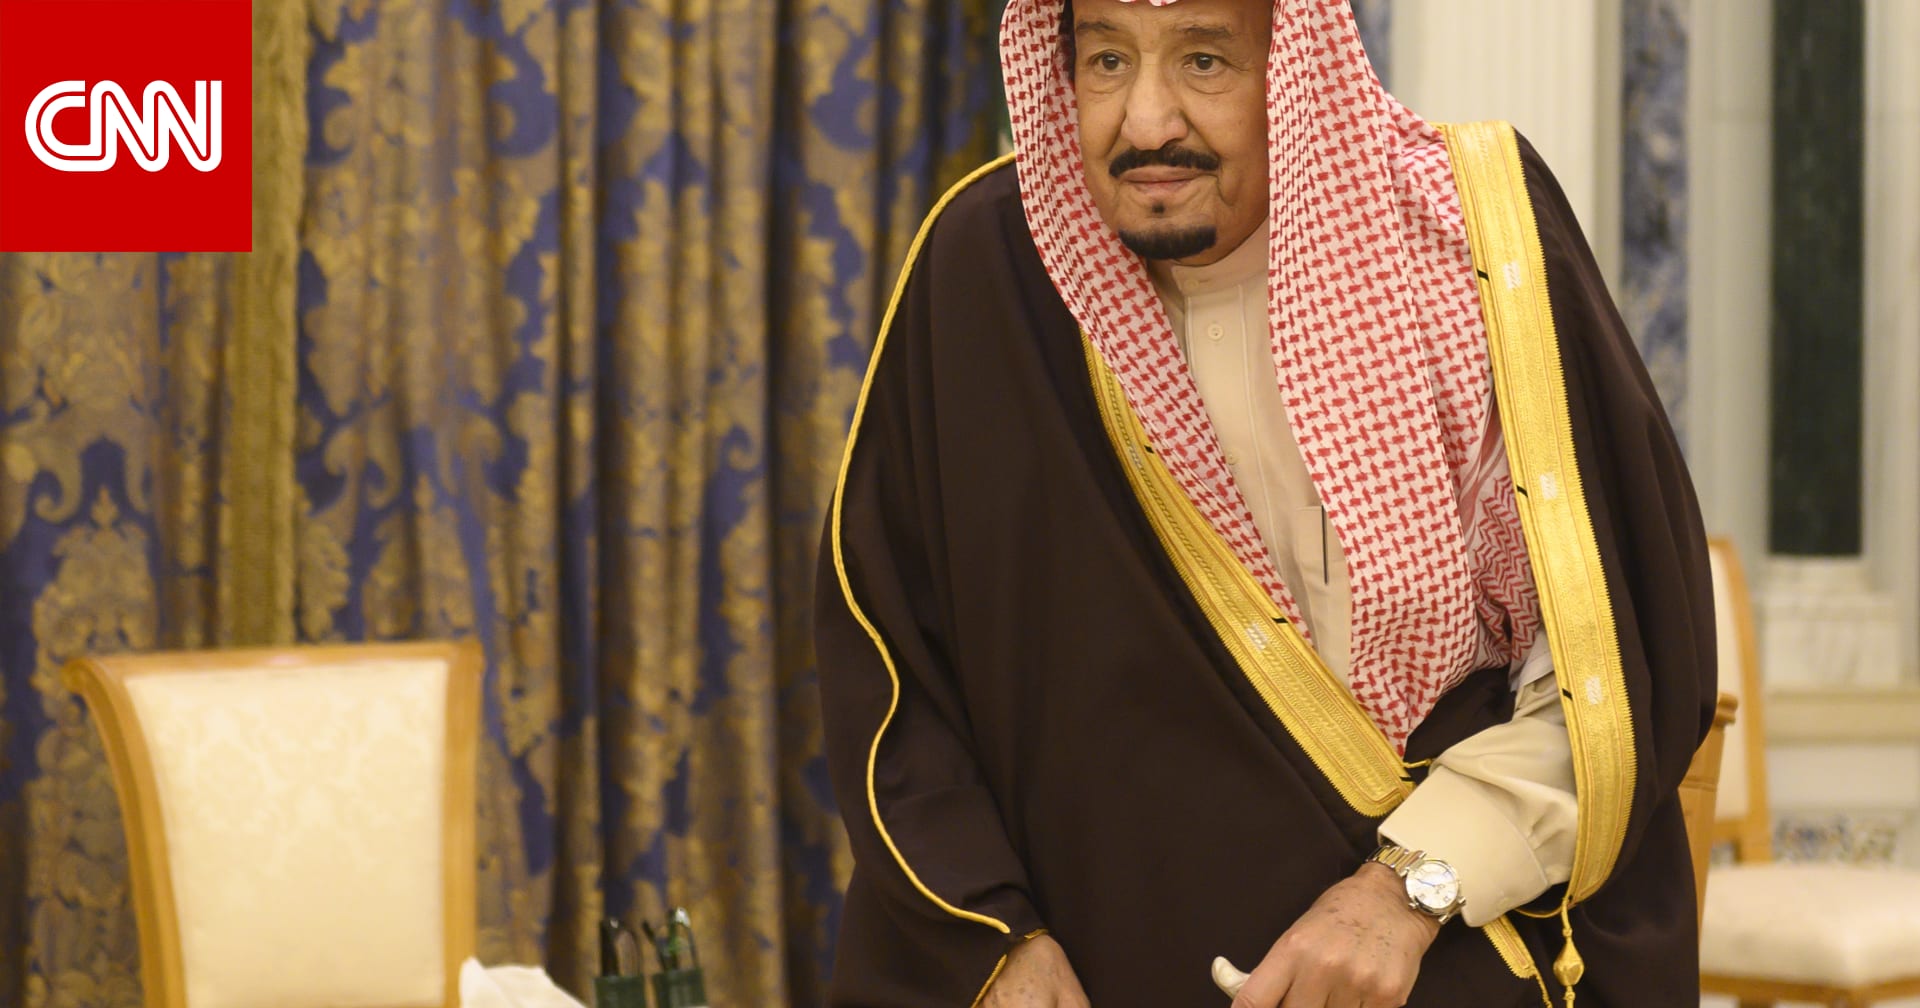 السعودية.. تغييرات وتحديات شهدتها المملكة في عهد الملك سلمان - CNN Arabic